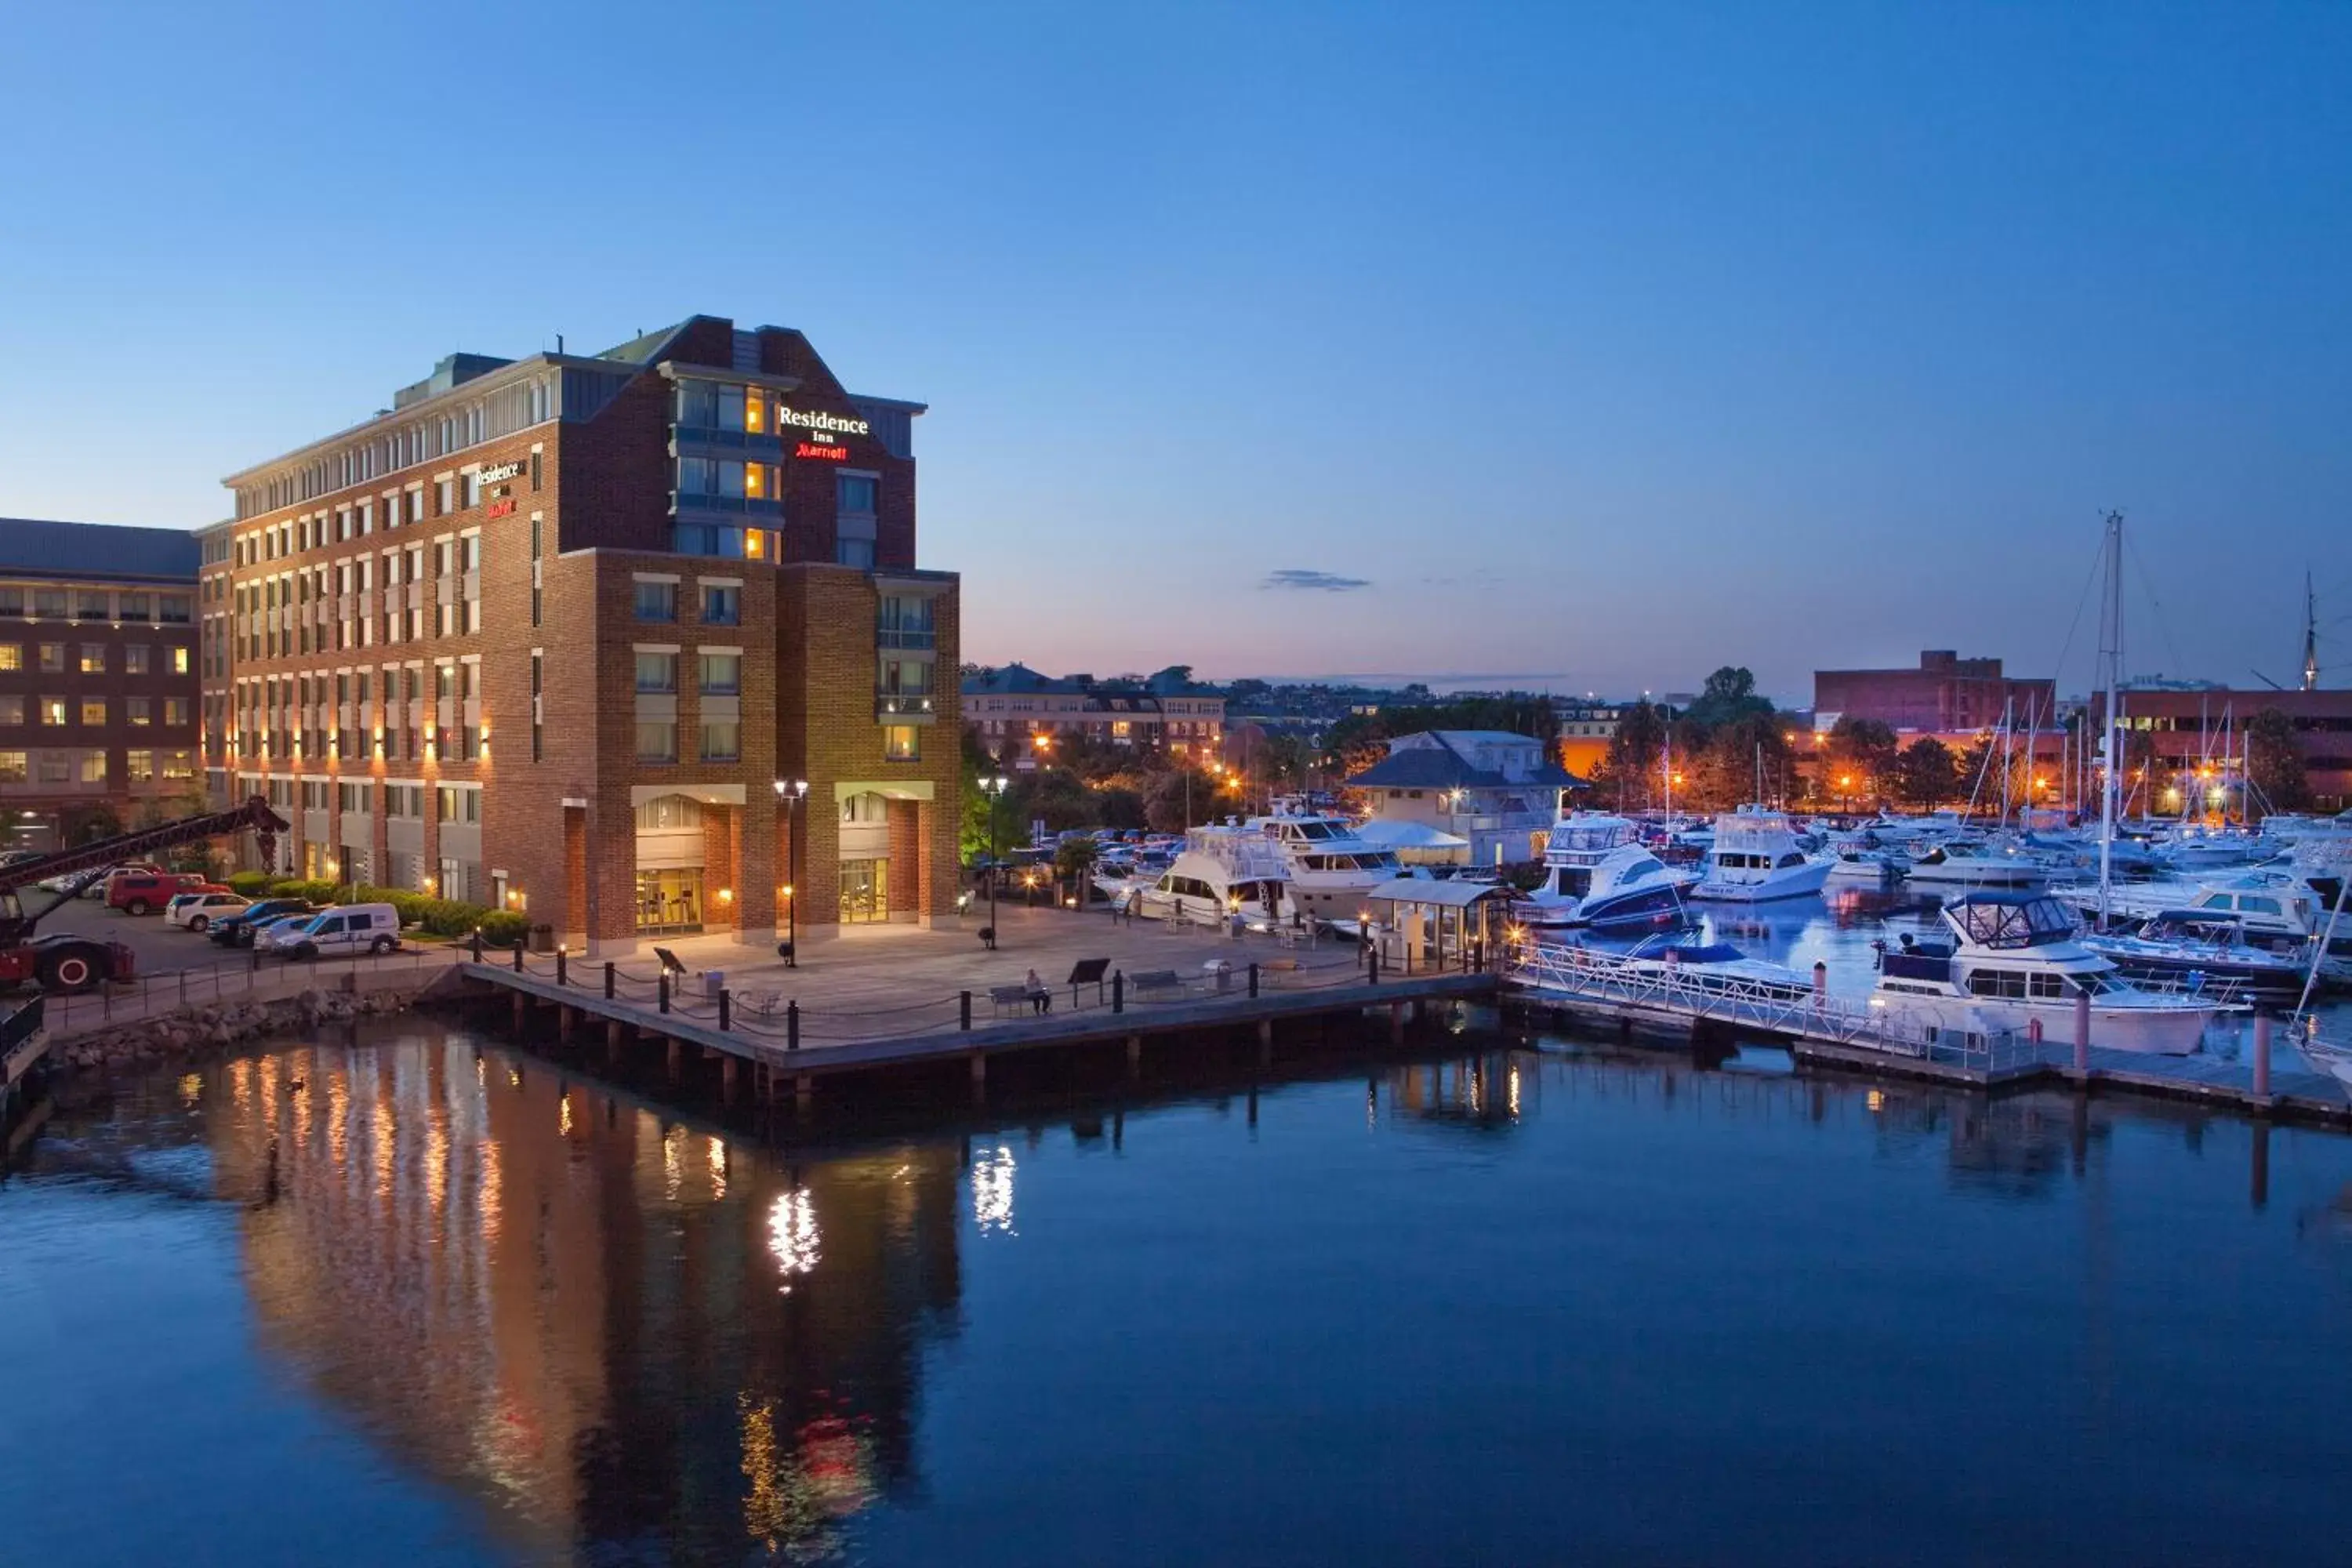 Property building in Residence Inn by Marriott Boston Harbor on Tudor Wharf